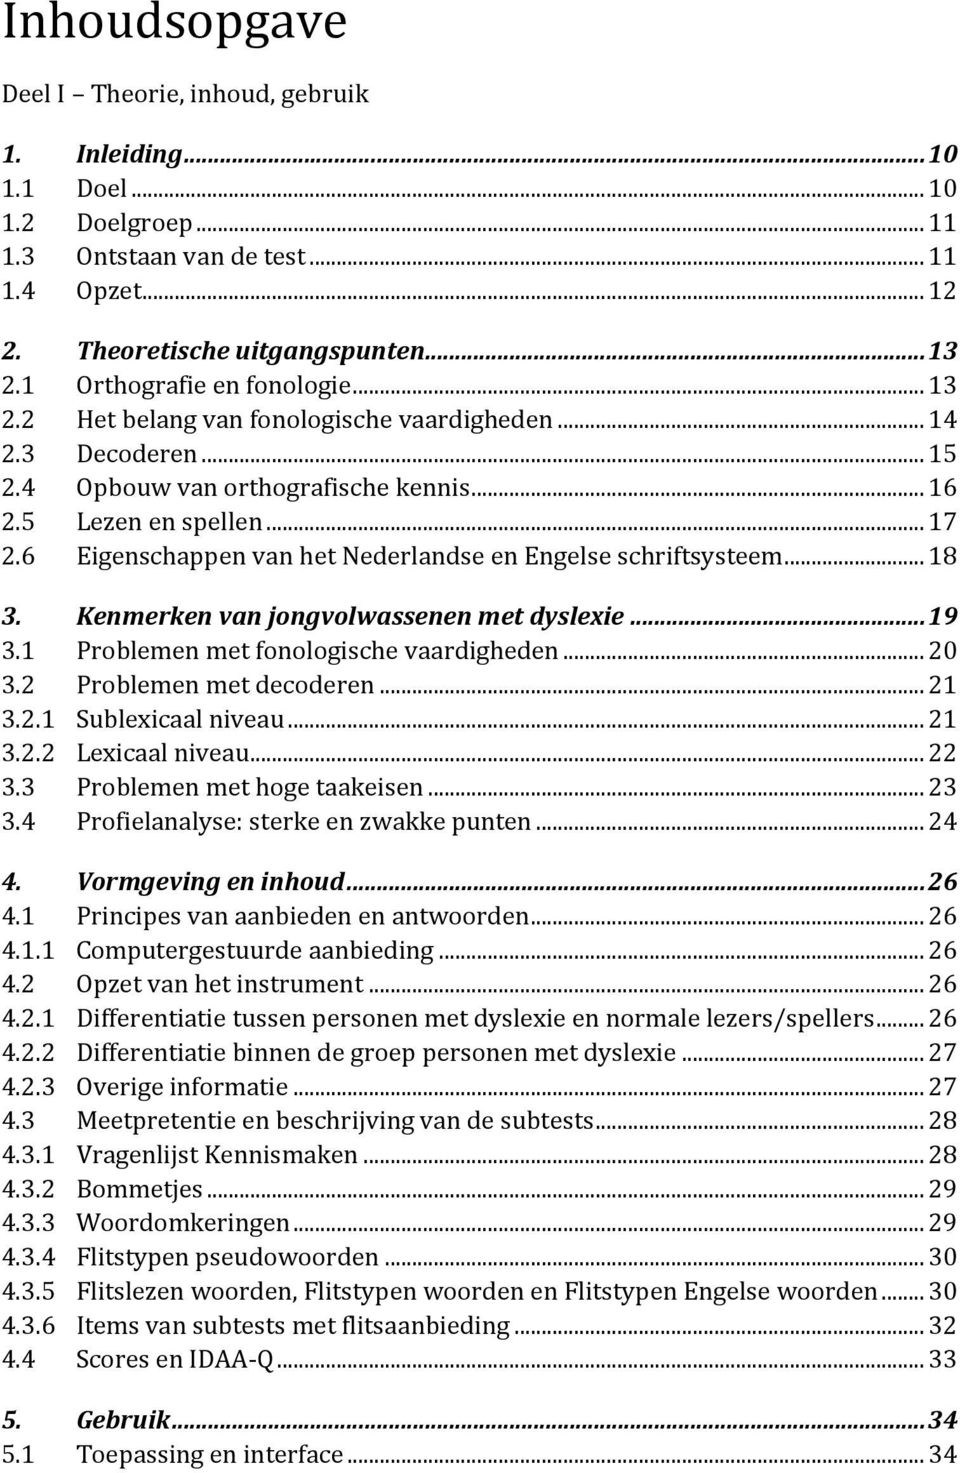 6 Eigenschappen van het Nederlandse en Engelse schriftsysteem... 18 3. Kenmerken van jongvolwassenen met dyslexie... 19 3.1 Problemen met fonologische vaardigheden... 20 3.2 Problemen met decoderen.